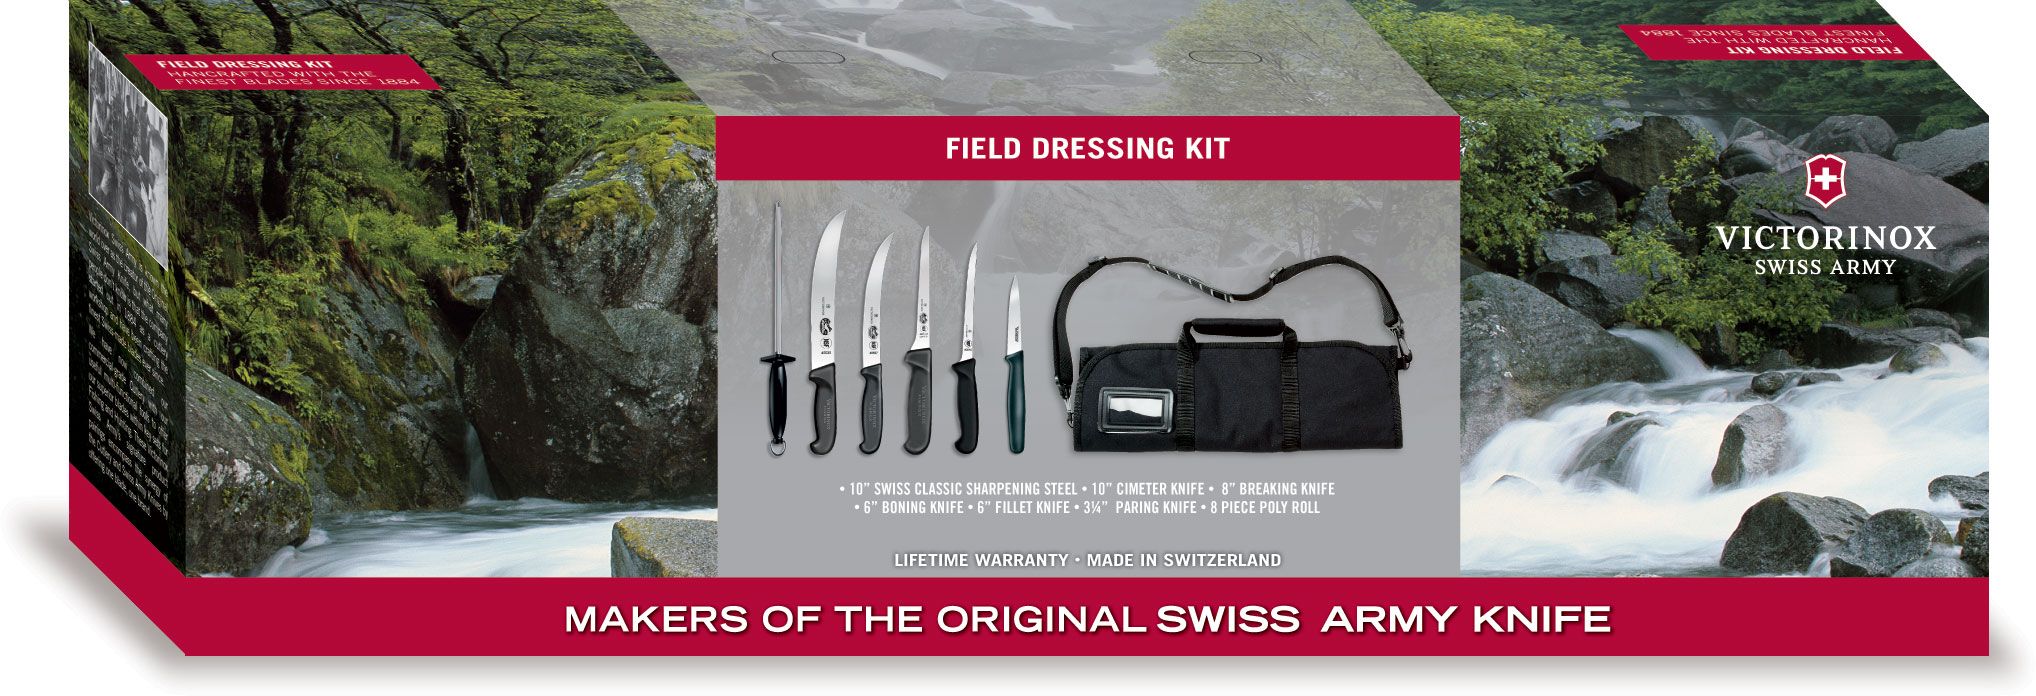 Victorinox Forschner Small Field Dressing Kit